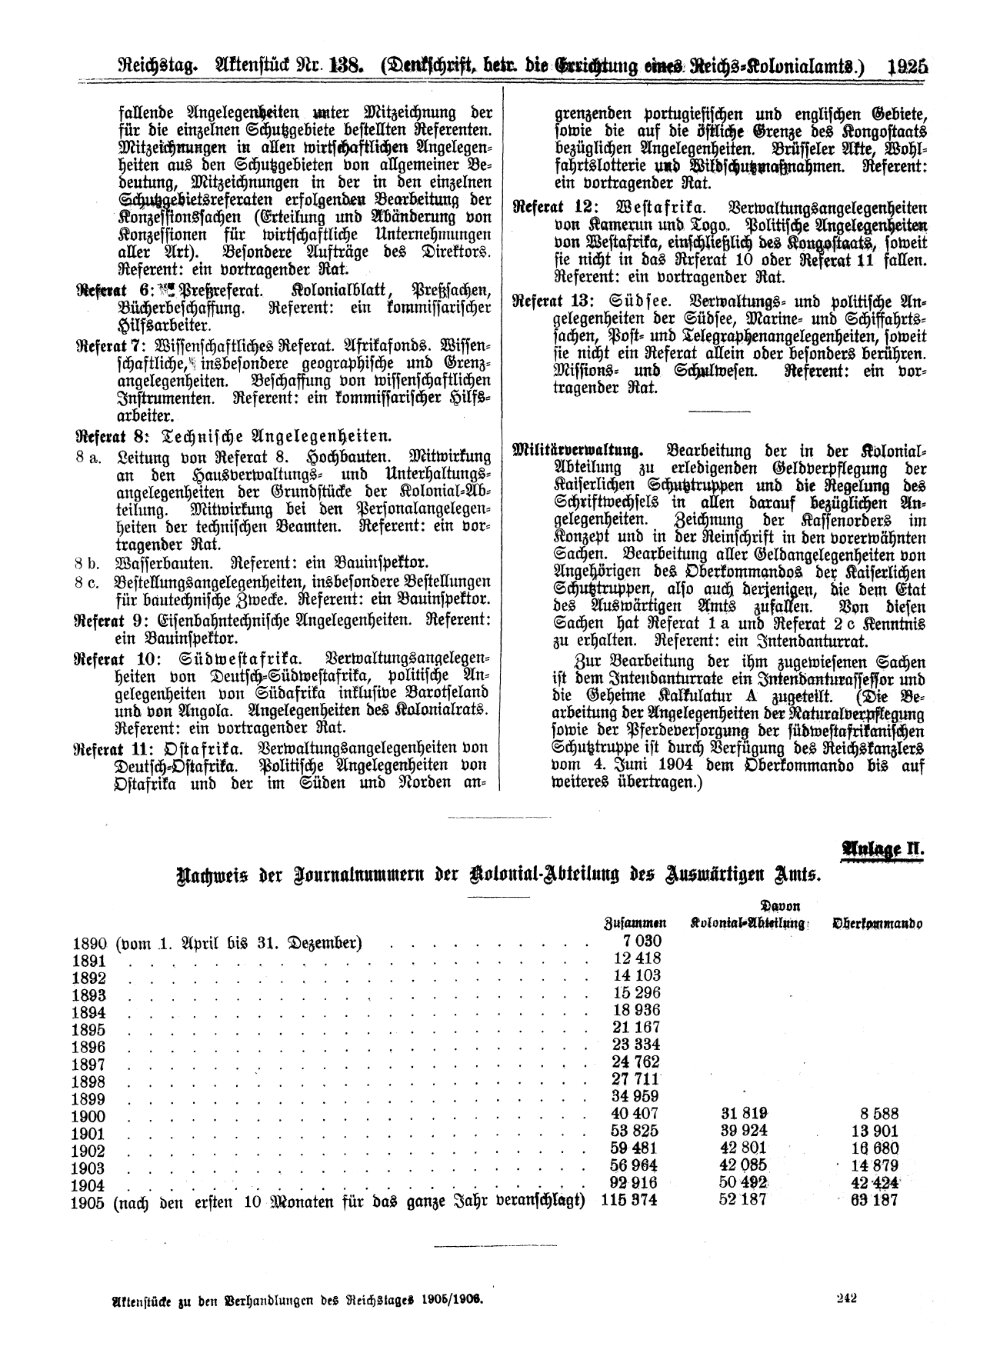 Scan der Seite 1925